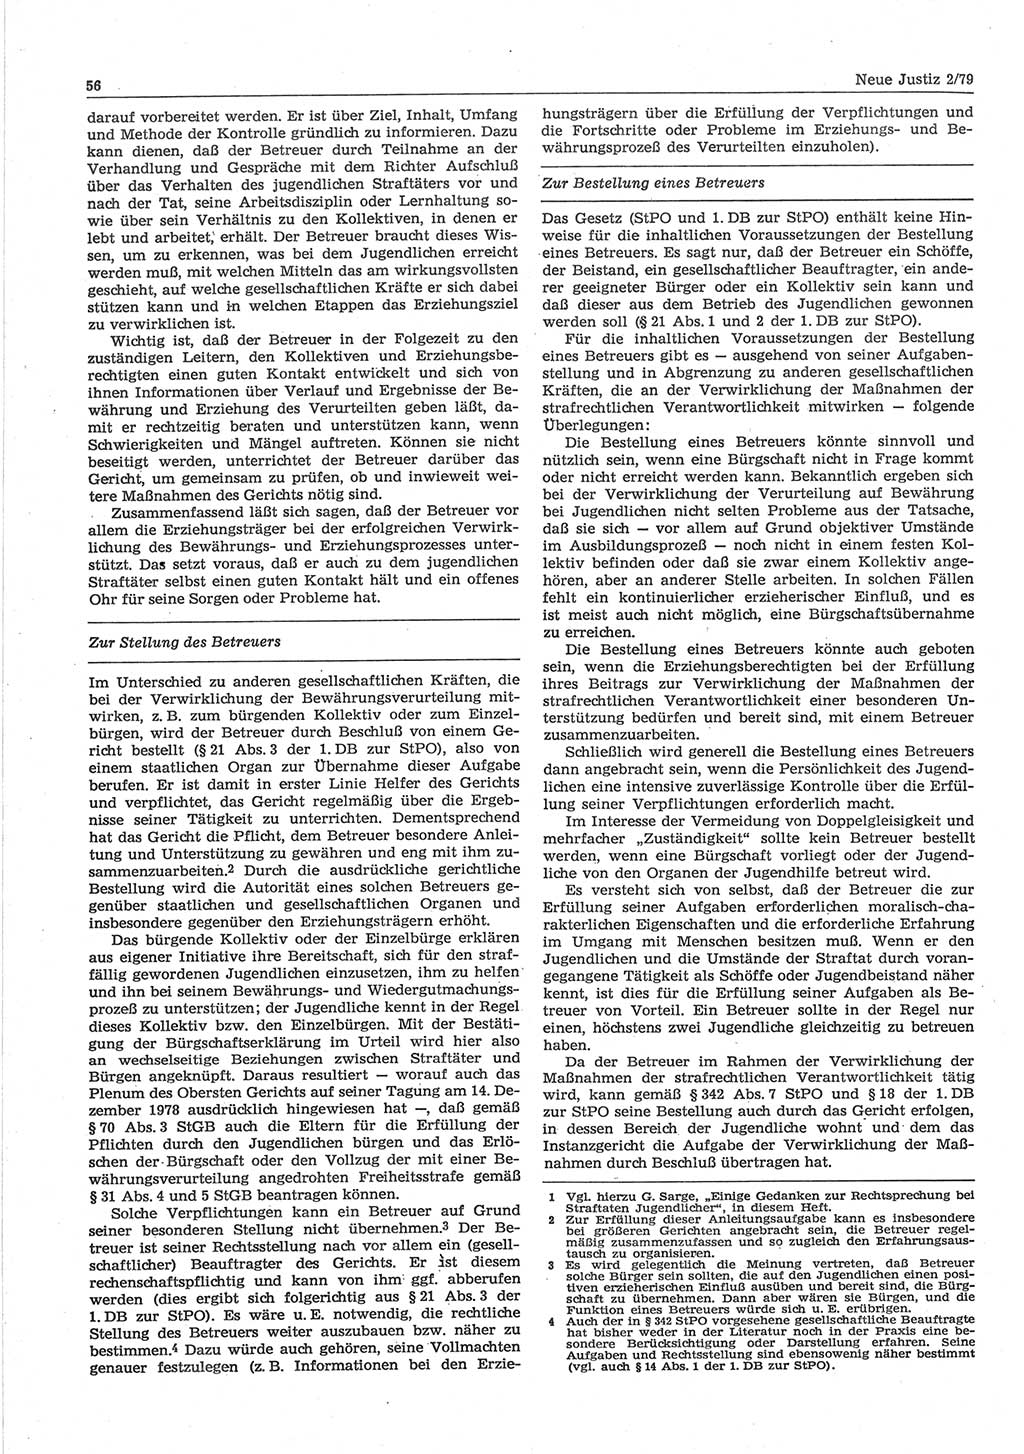 Neue Justiz (NJ), Zeitschrift für sozialistisches Recht und Gesetzlichkeit [Deutsche Demokratische Republik (DDR)], 33. Jahrgang 1979, Seite 56 (NJ DDR 1979, S. 56)